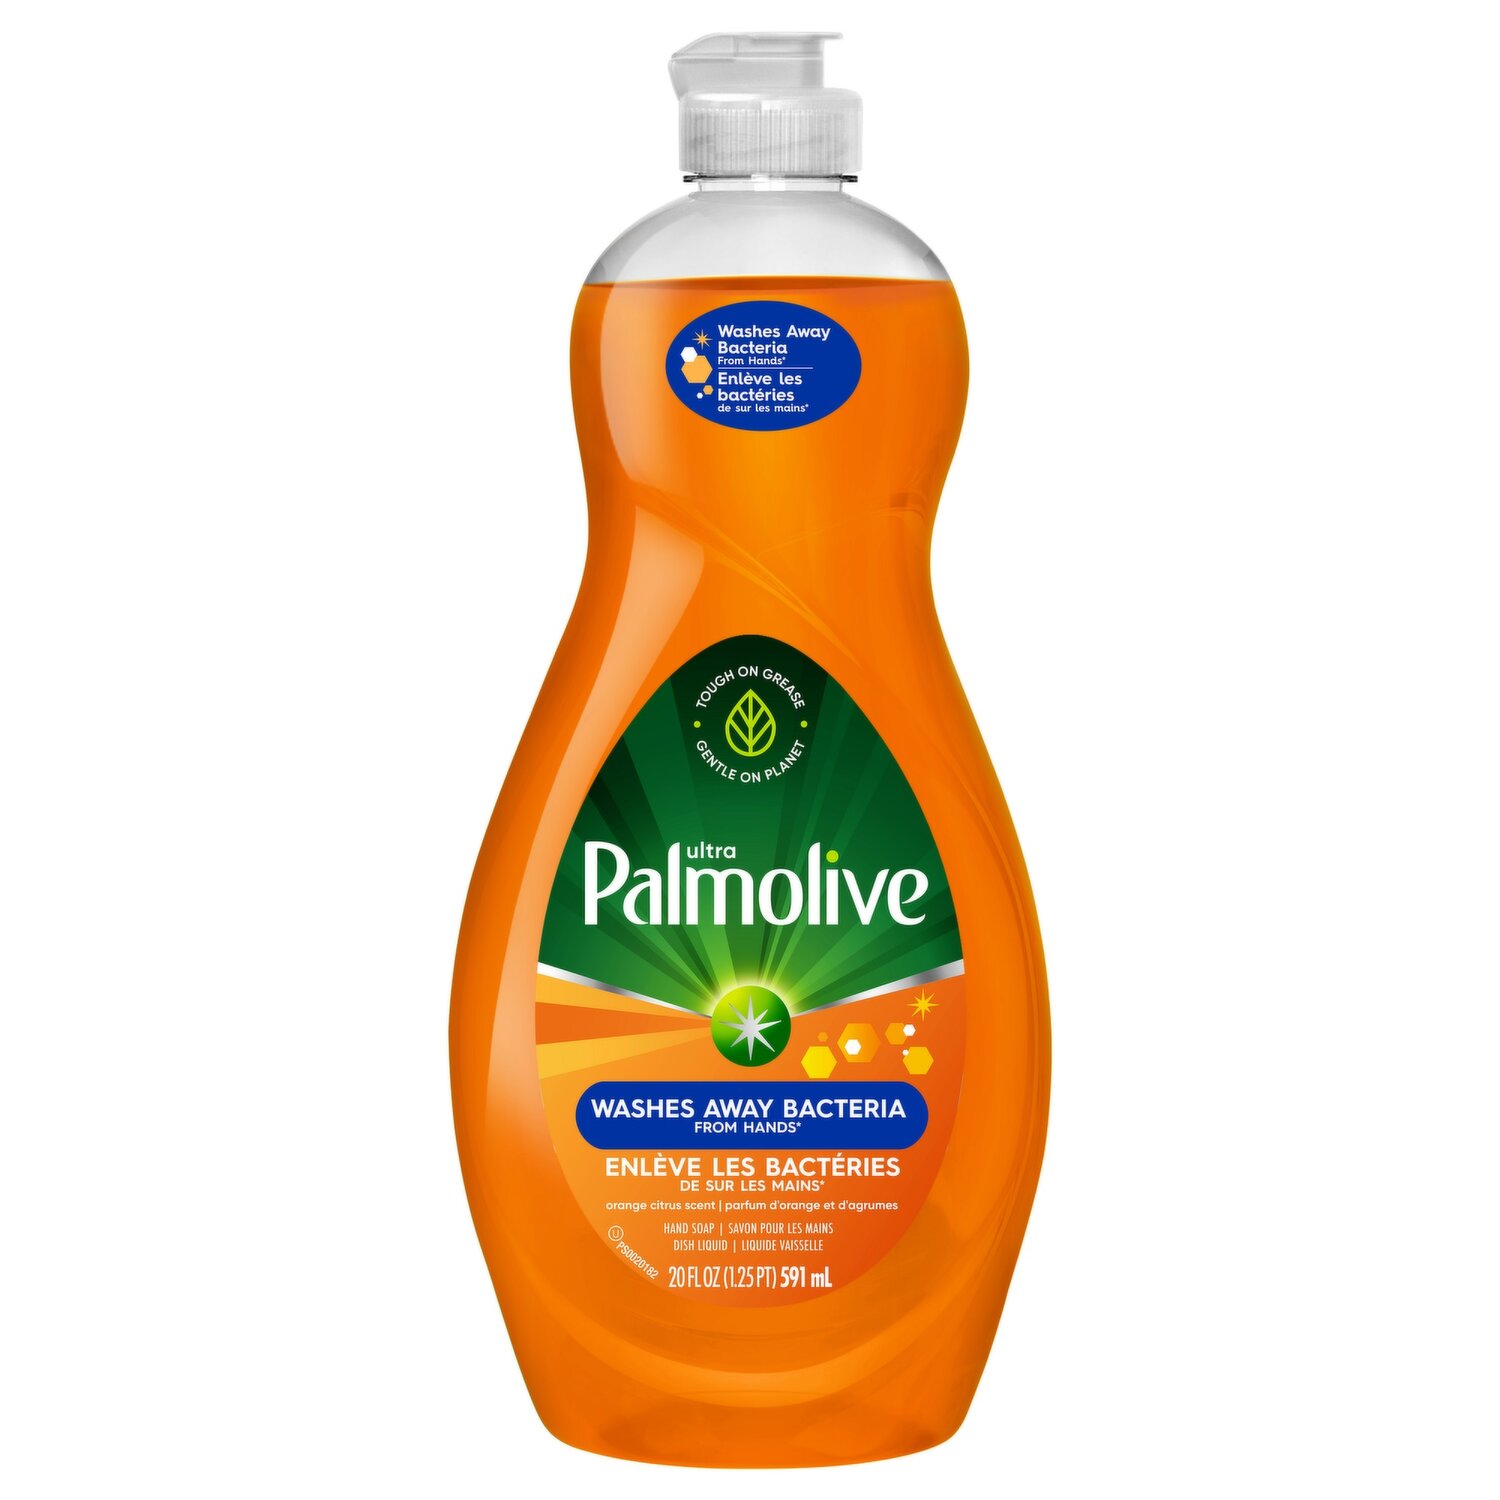 Palmolive Essential Clean Liquid Dish Soap, Orange Tangerine Scent - 828 ml